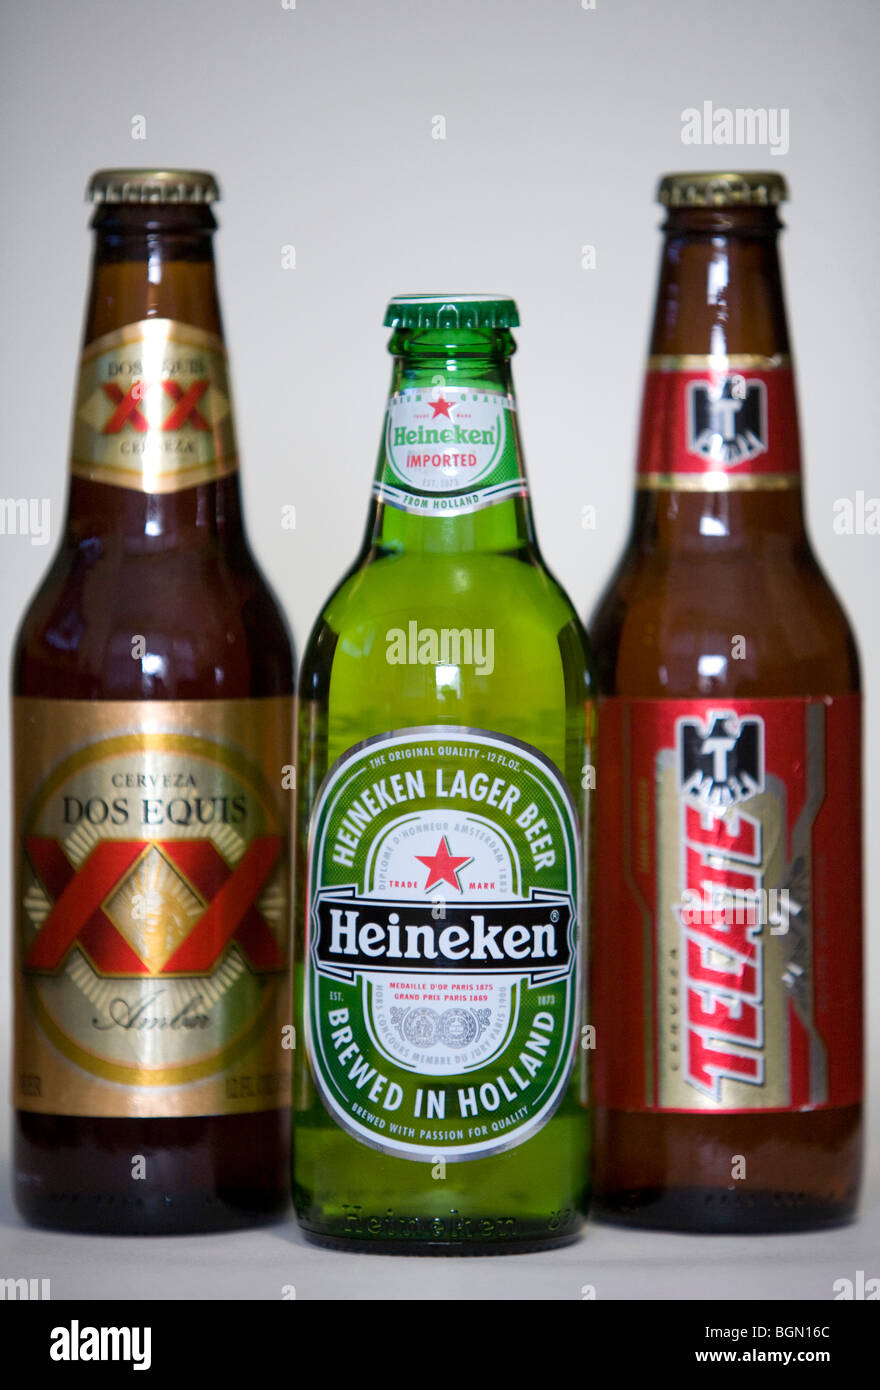 Tecate, Heineken and Dos Equis beer bottles.  Stock Photo